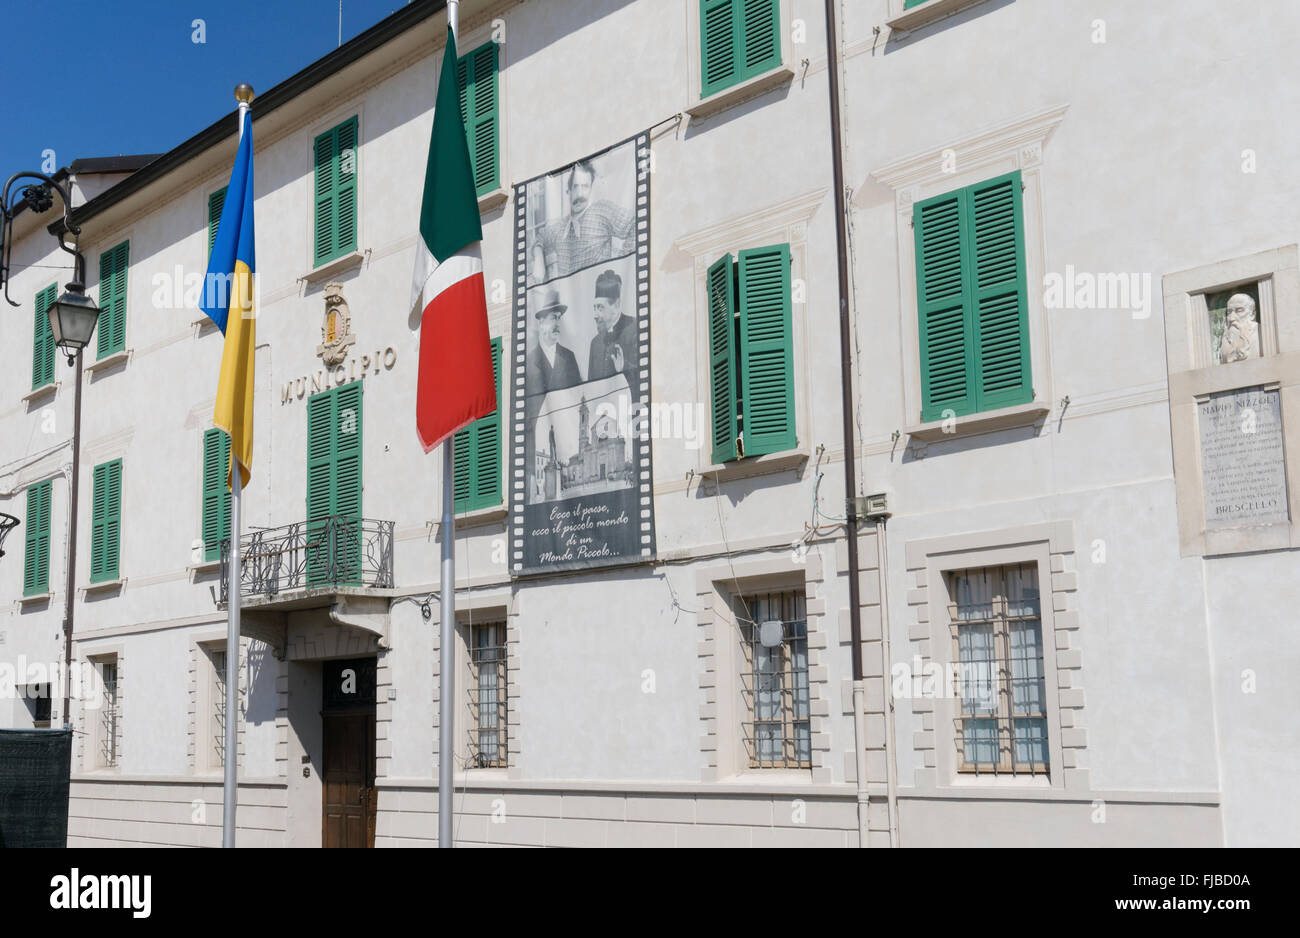 town hall of Brescello, Reggio Emilia province, Emilia Romagna, Italy Stock Photo